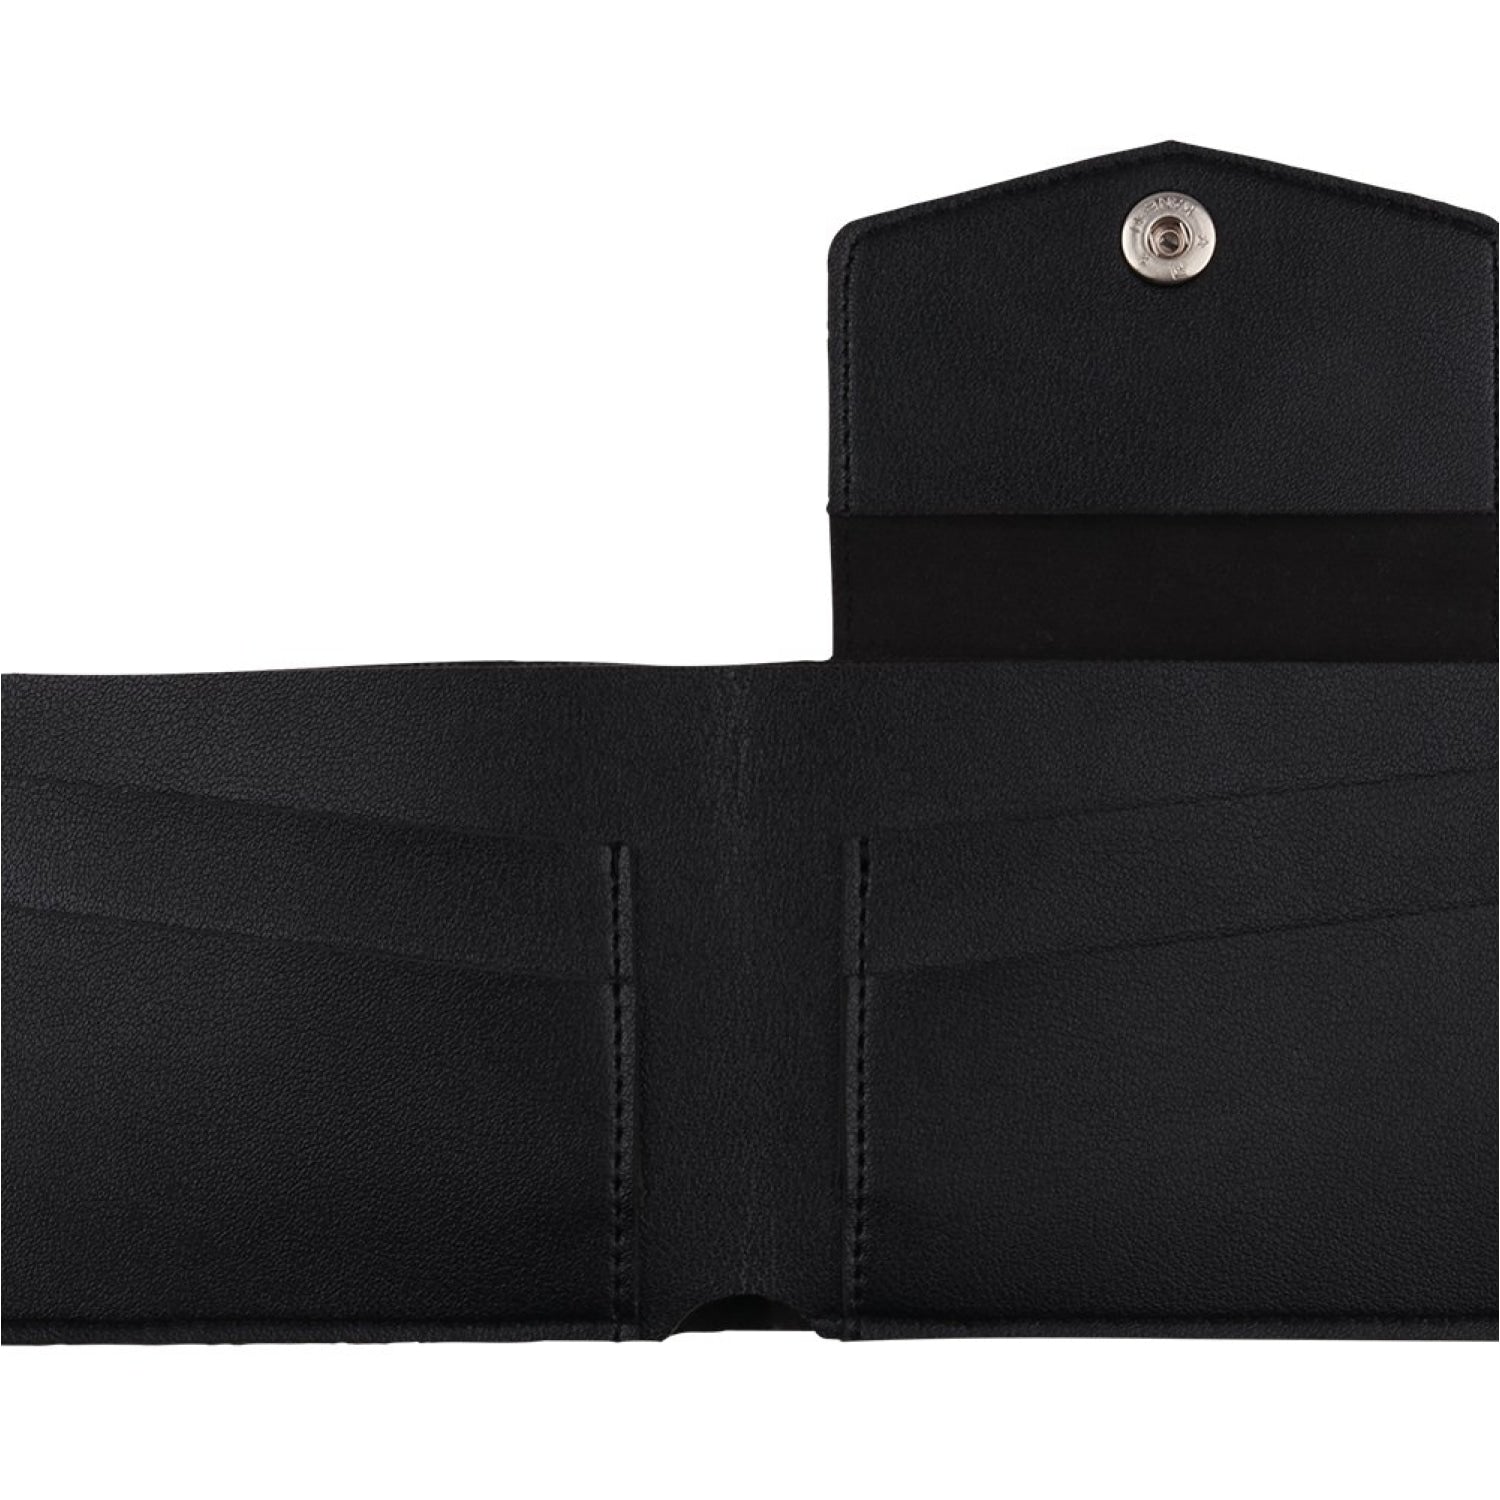 Pochette Mini Wallet (Black). - wallets